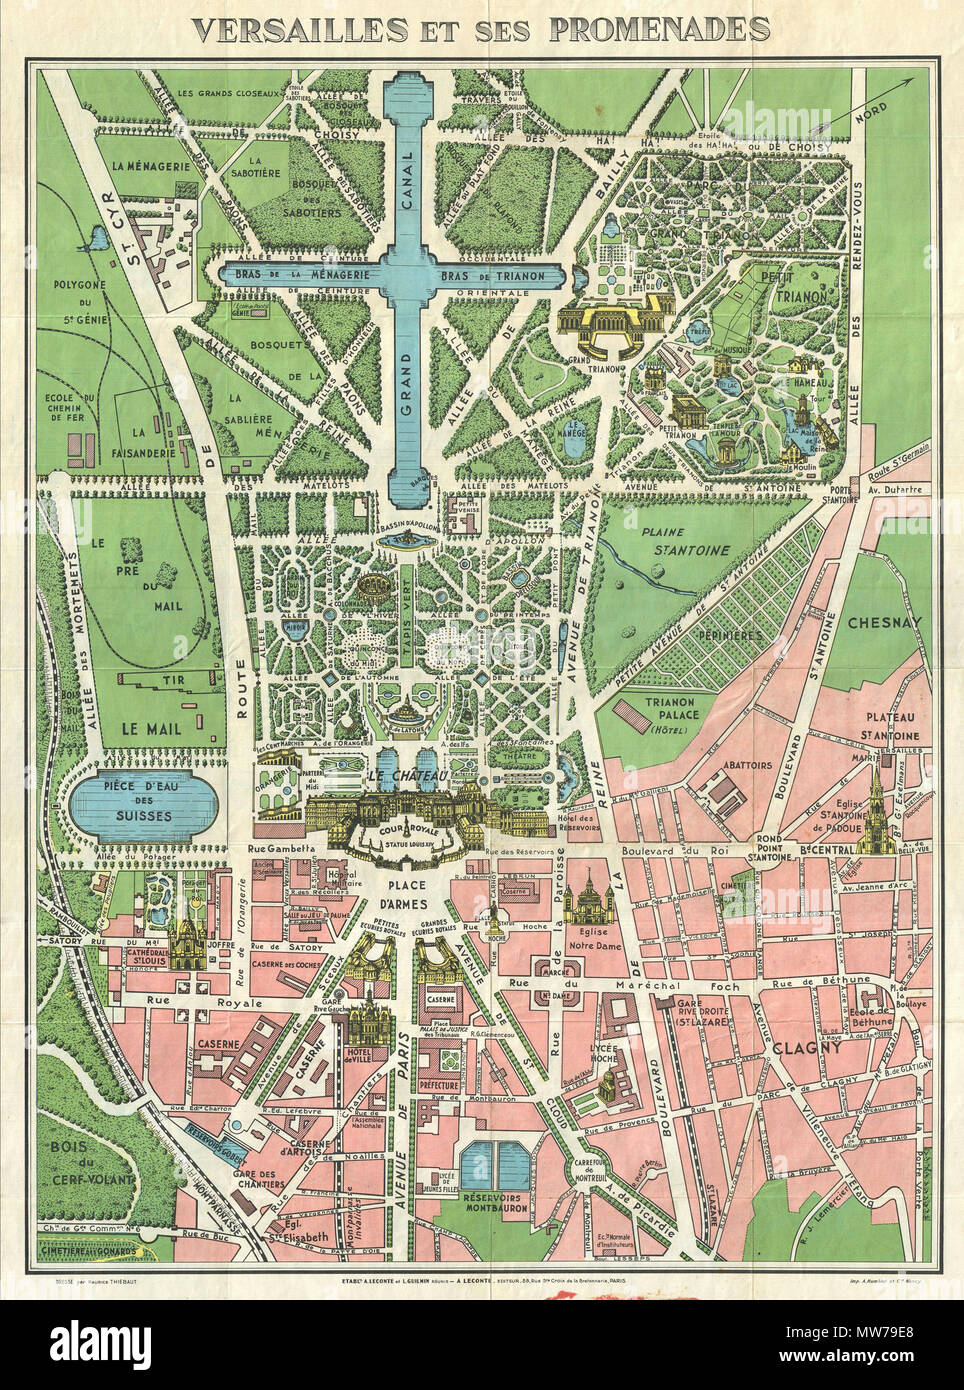 Versailles et ses promenades . Anglais : Une carte touristique avec un plan  général de Versailles et l'oiseau, vues de plusieurs caractéristiques  notables, y compris les bâtiments, de fontaines et de